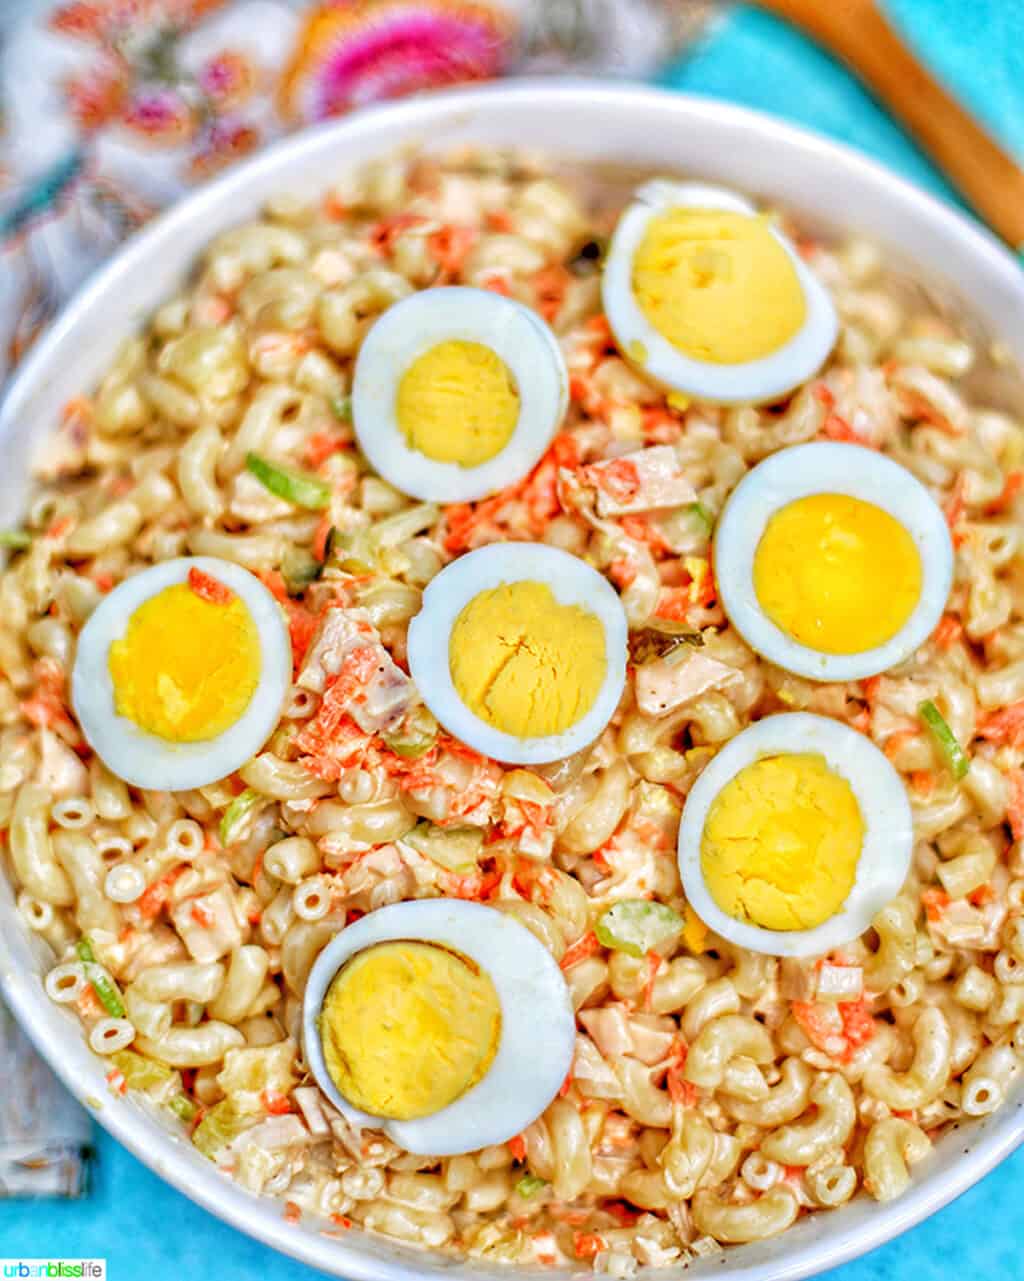 Filipino Macaroni Salad in a bowl